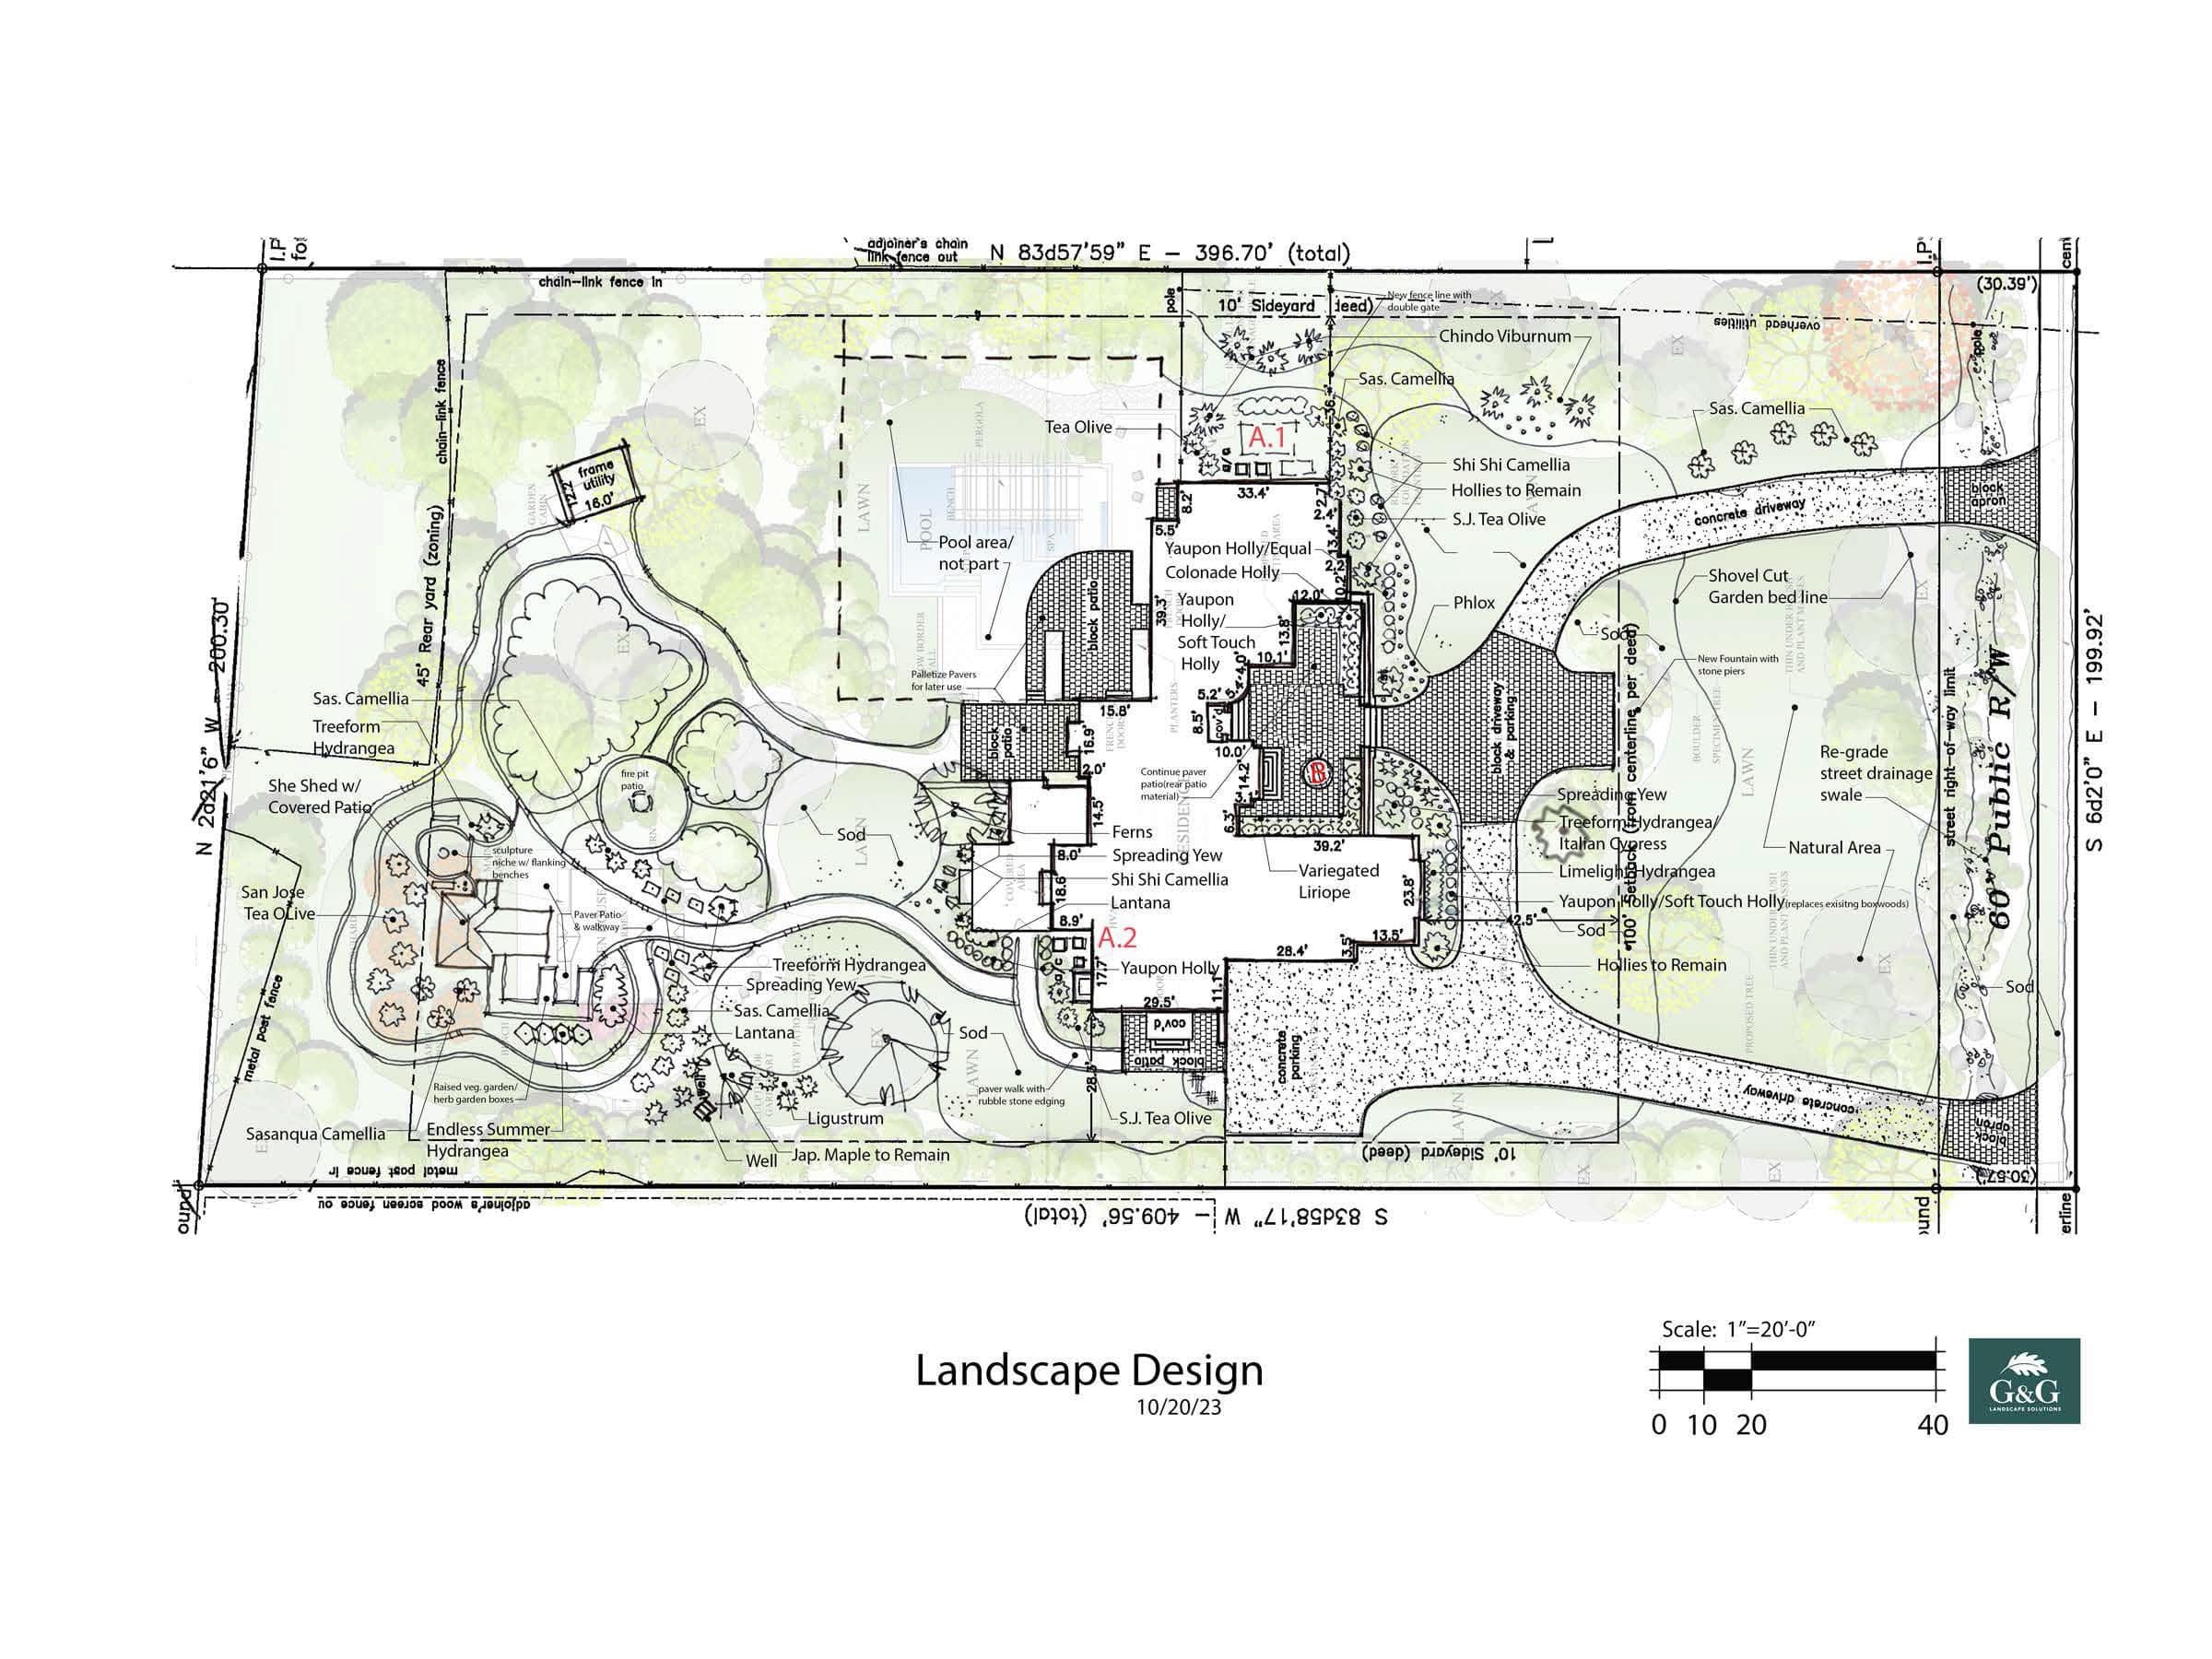 A plan for a landscape design.